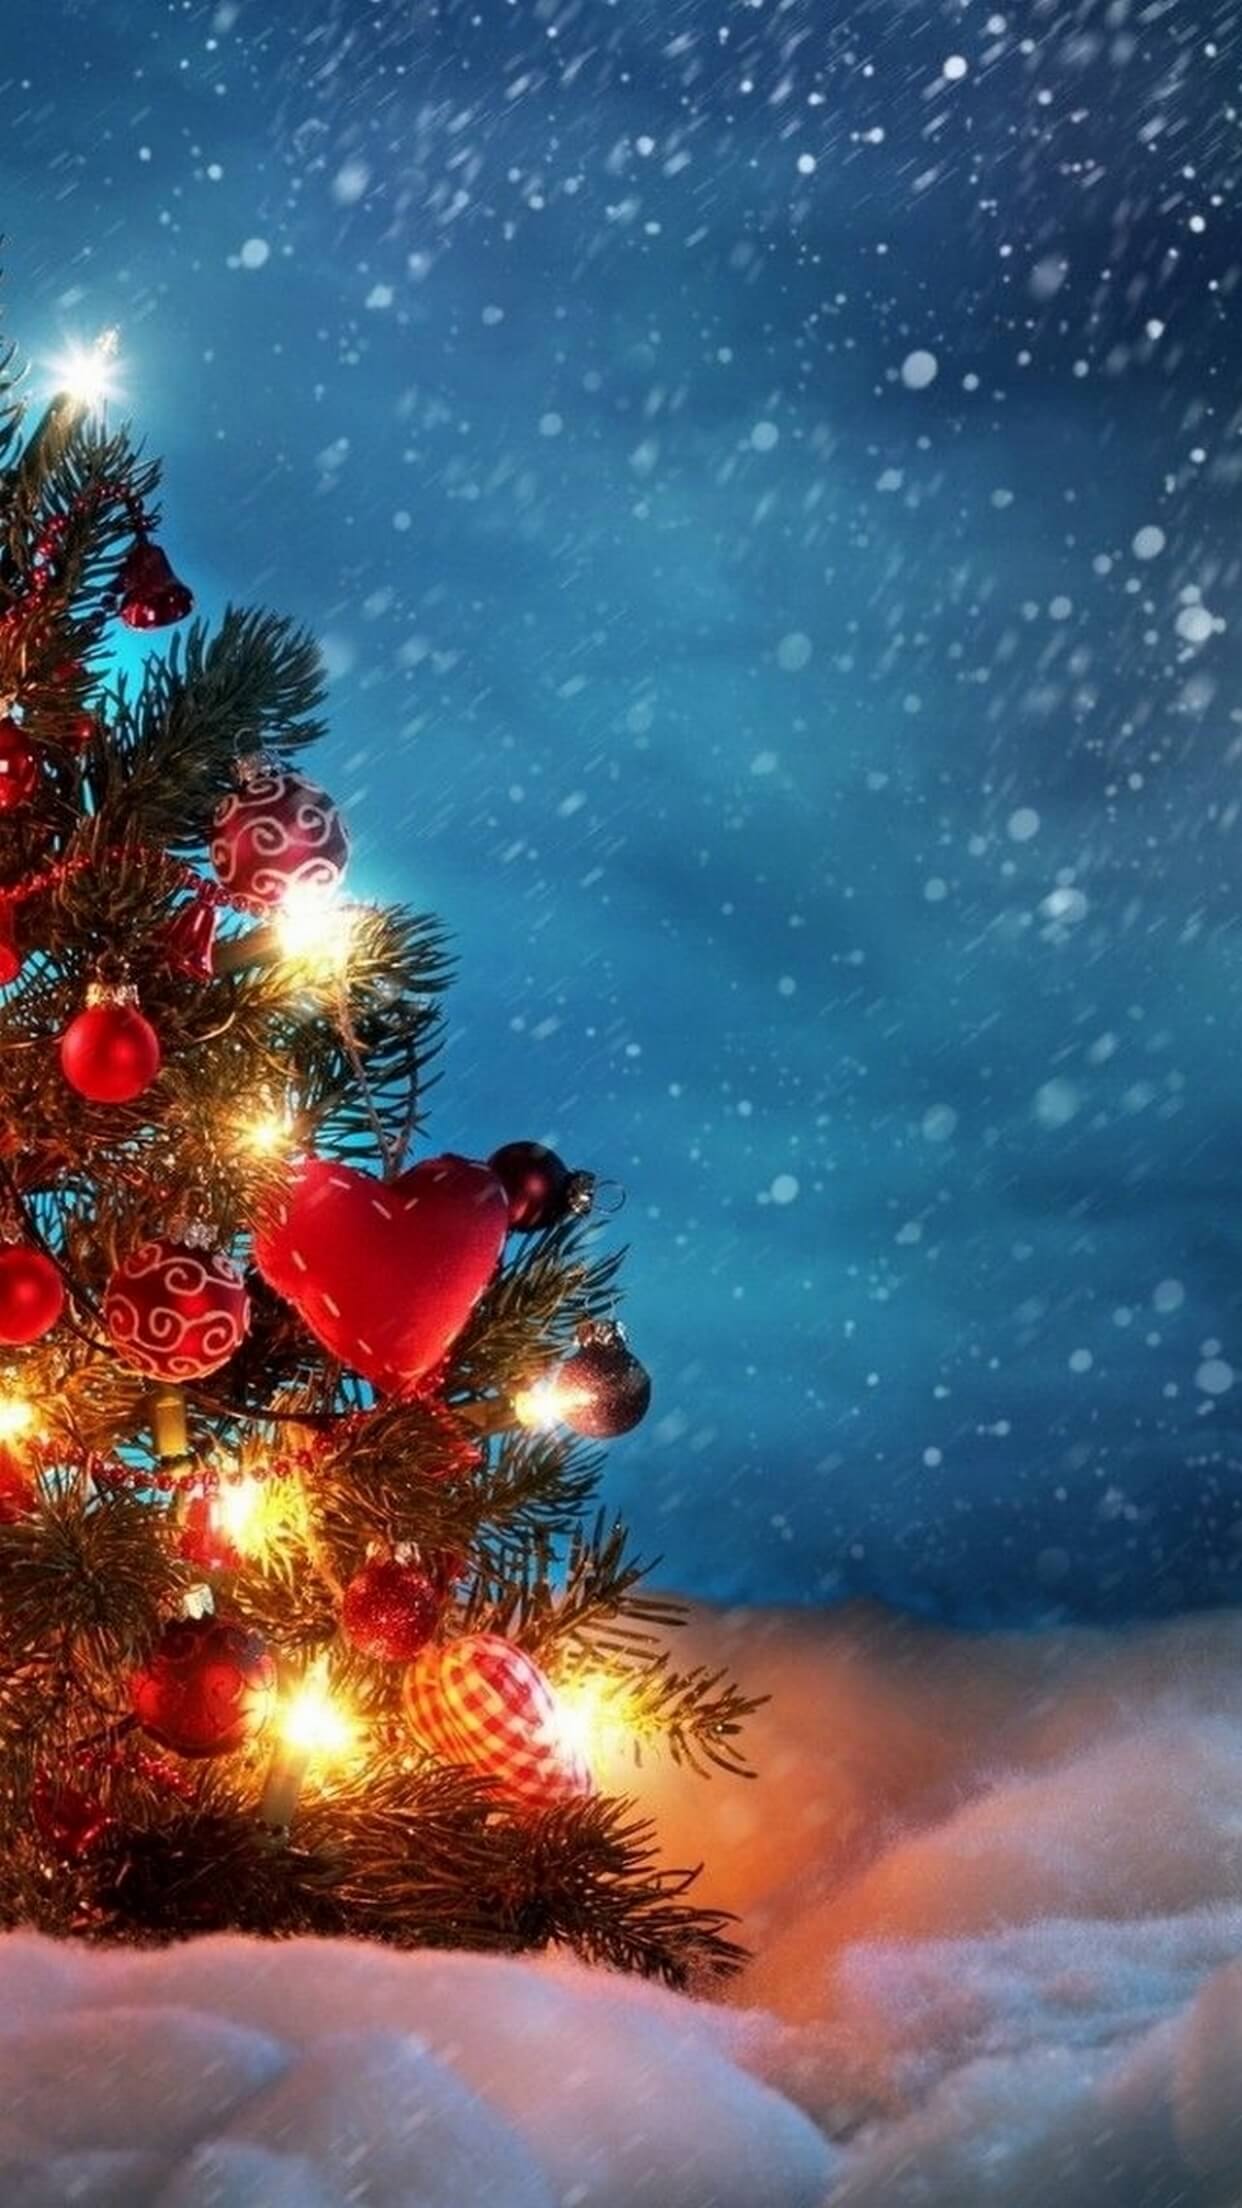 クリスマスの壁紙,空,クリスマスツリー,自然,木,クリスマスの飾り